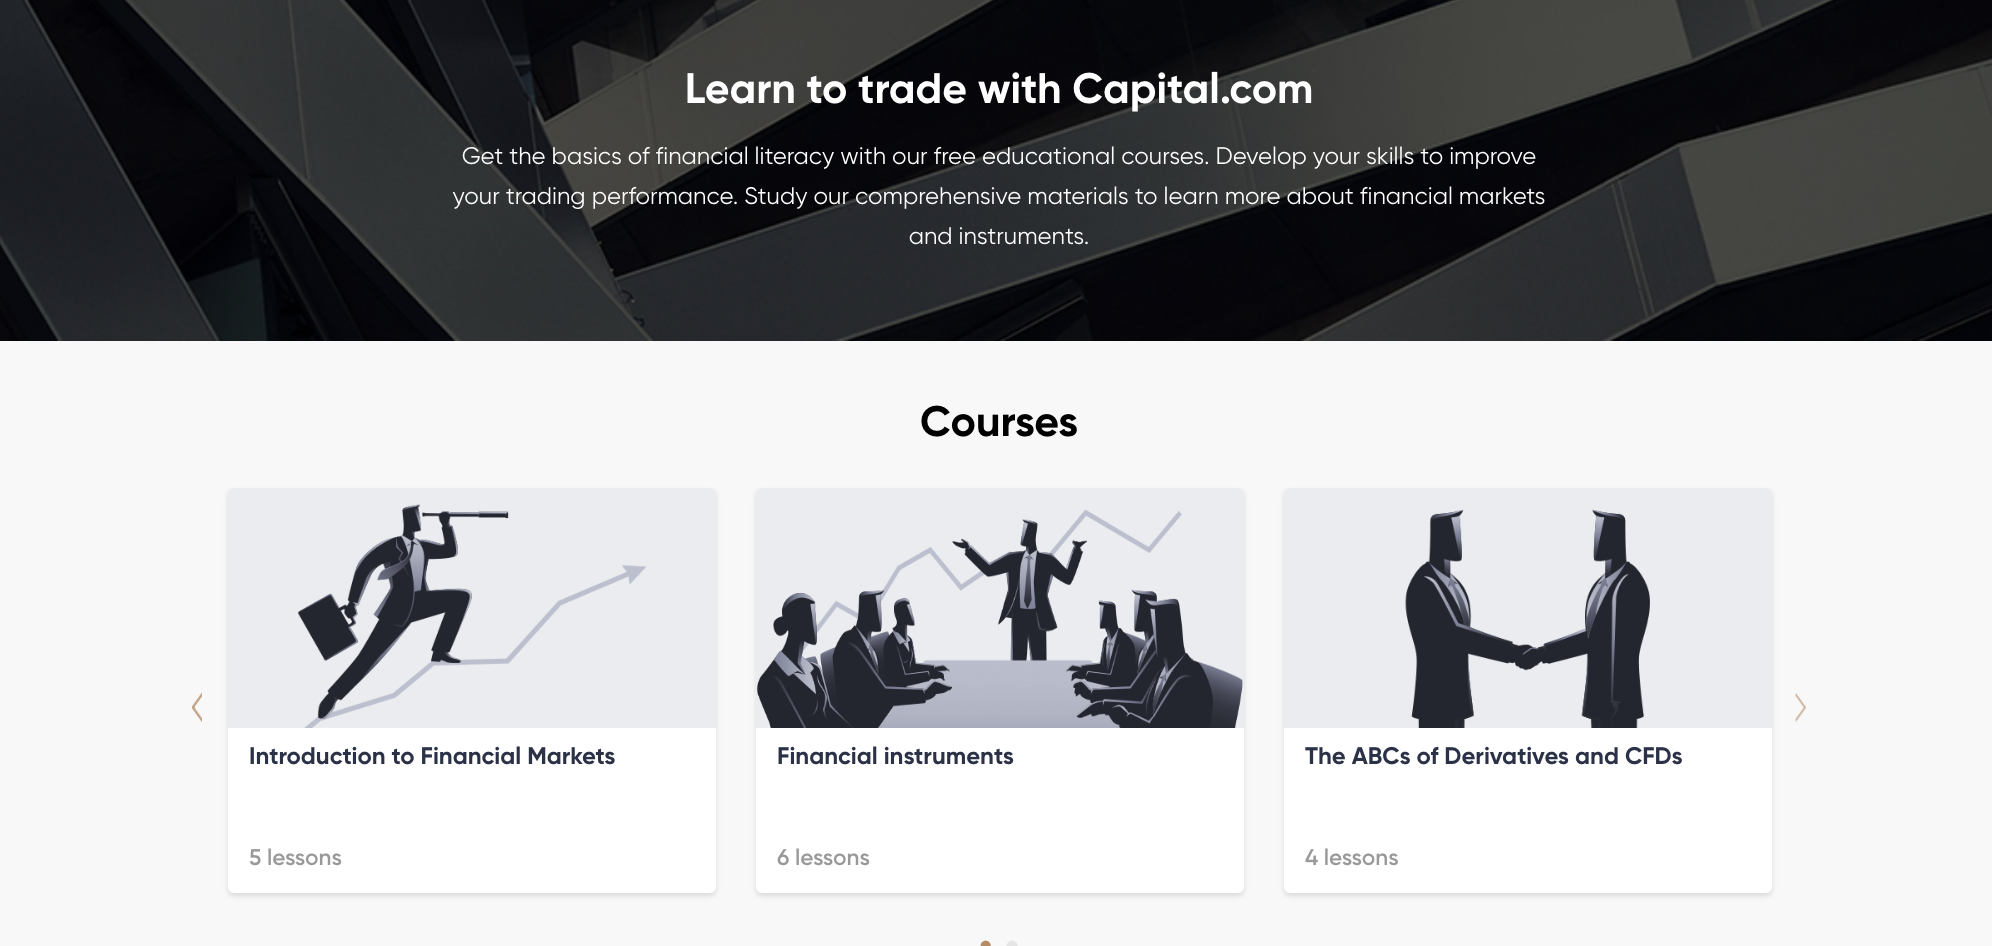 Capital.com, ticaret hakkında her şeyi öğrenebileceğiniz bir bölüme sahiptir.